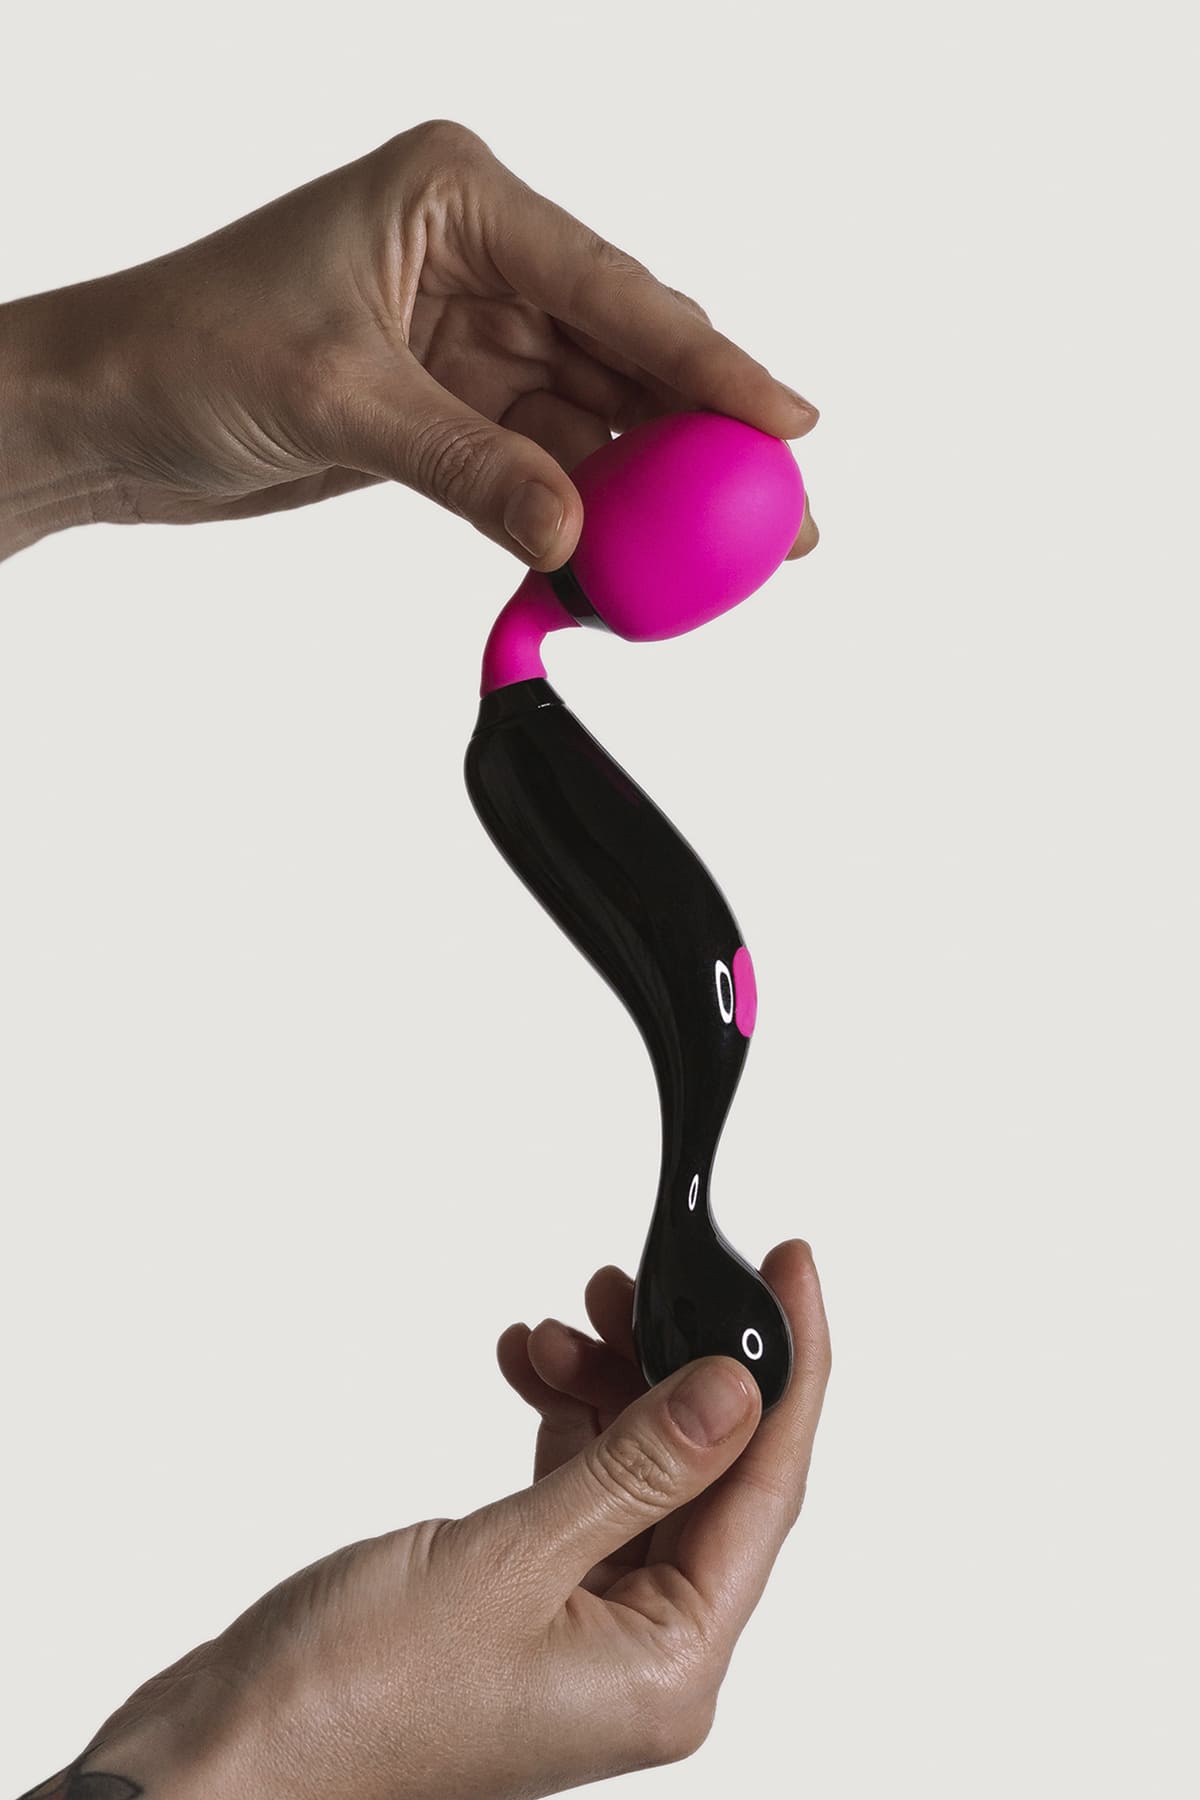 Apie masažuoklį: 
Medžiaga: silikonas 
Spalva: rožinė-juoda 
Baterija: ličio 
Matmenys: Ilgis 21 cm / Skersmuo 3,7 cm 
Funkcijų skaičius: 10 
Variklių skaičius: 1 
Hidroizoliacija: Atsparus purslams - IPX5 
Stimuliavimo zona: klitoris